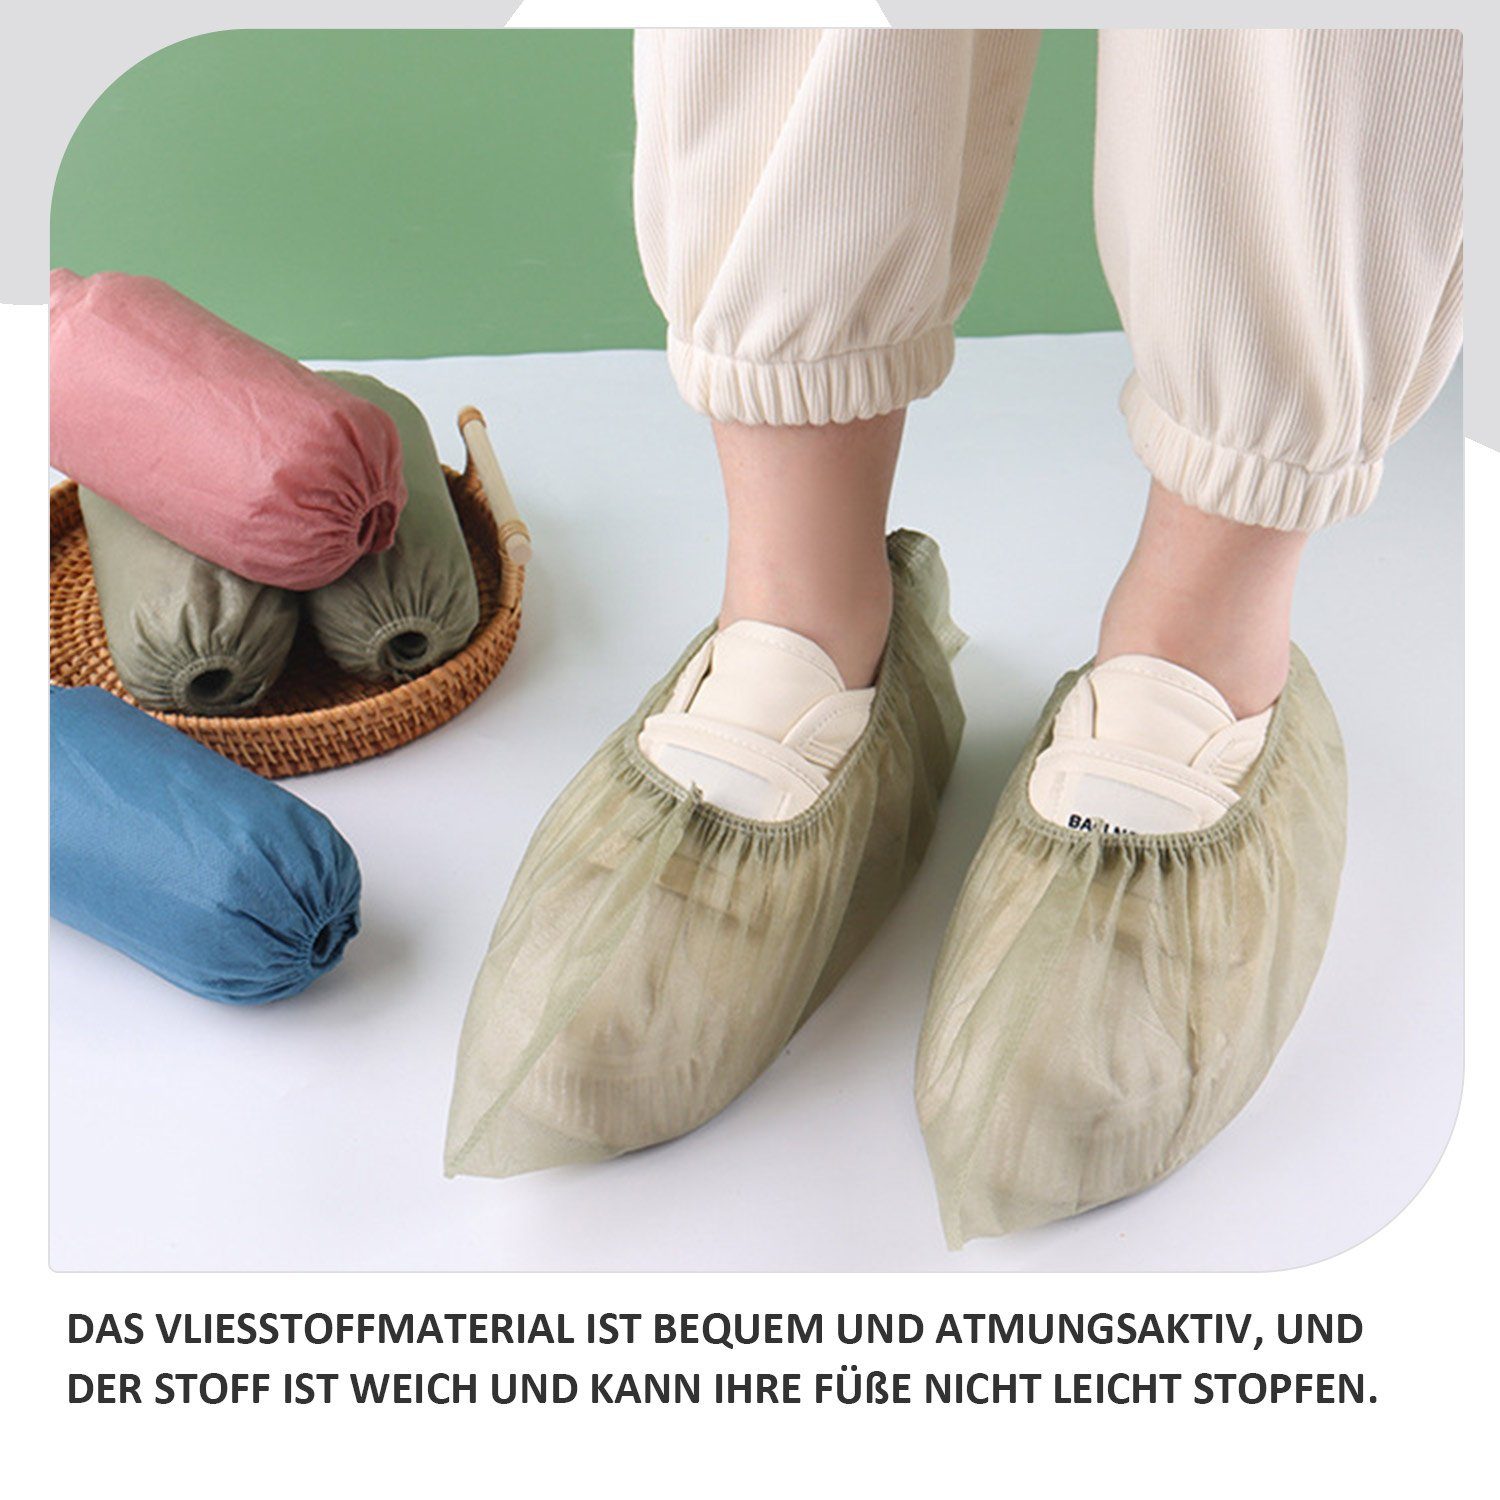 Daisred rutschfest Schuhüberzieher Stück Grün hygienische Einweg-Stiefel Schuhüberzieher 100